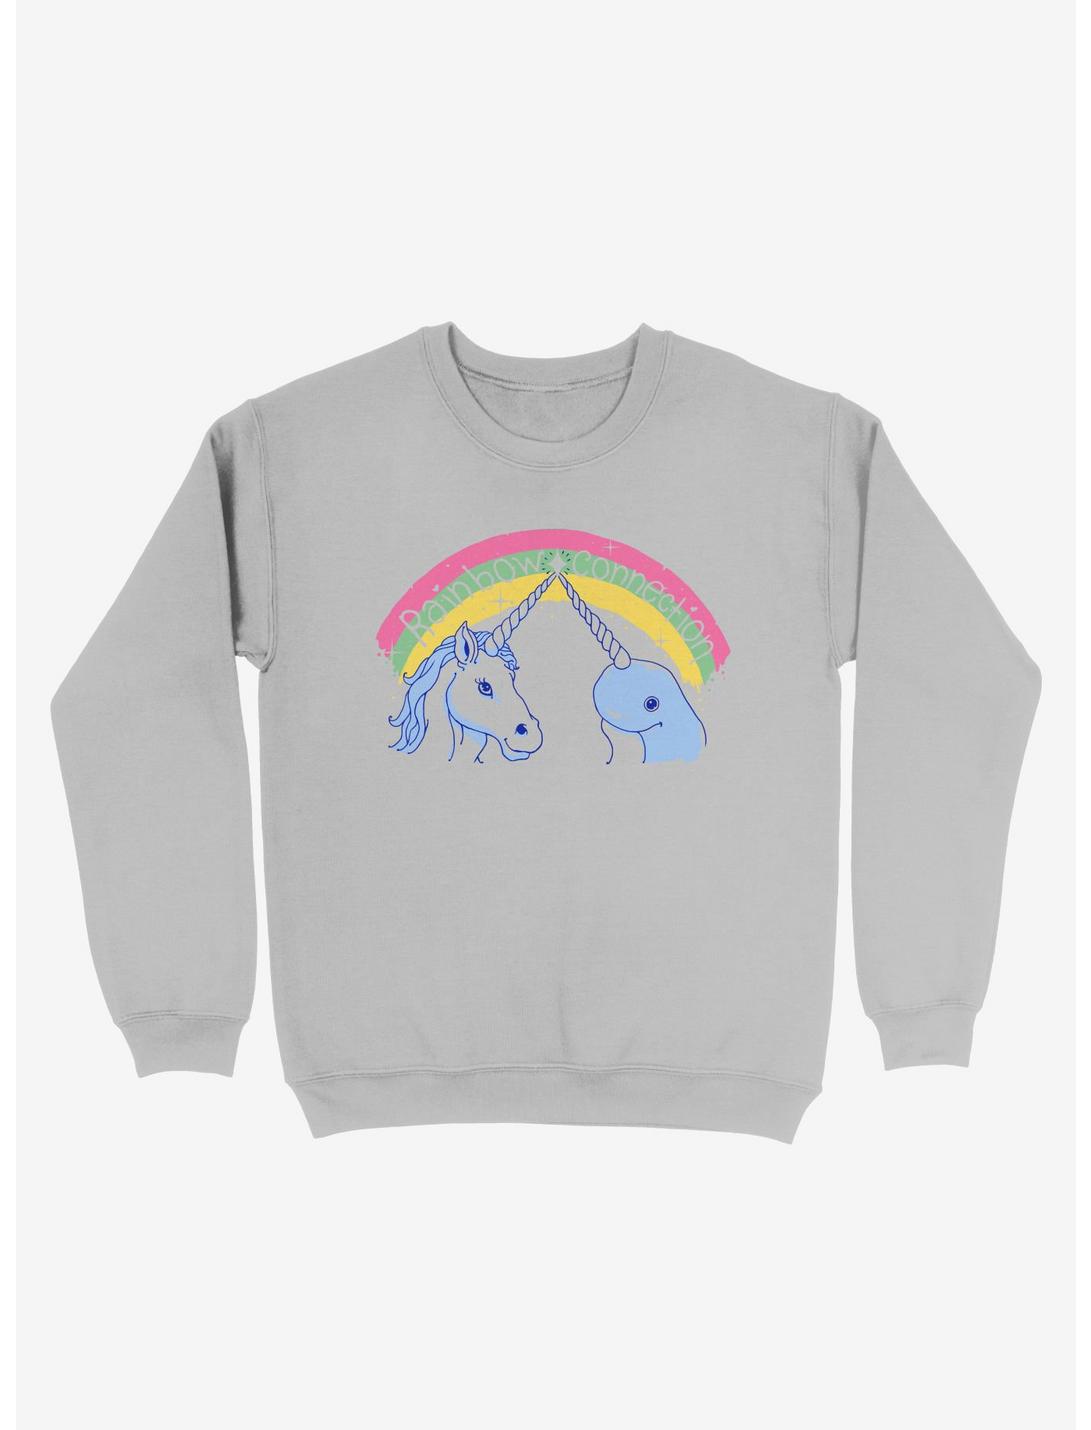 Rainbow Connection Sweatshirt, SILVER, hi-res